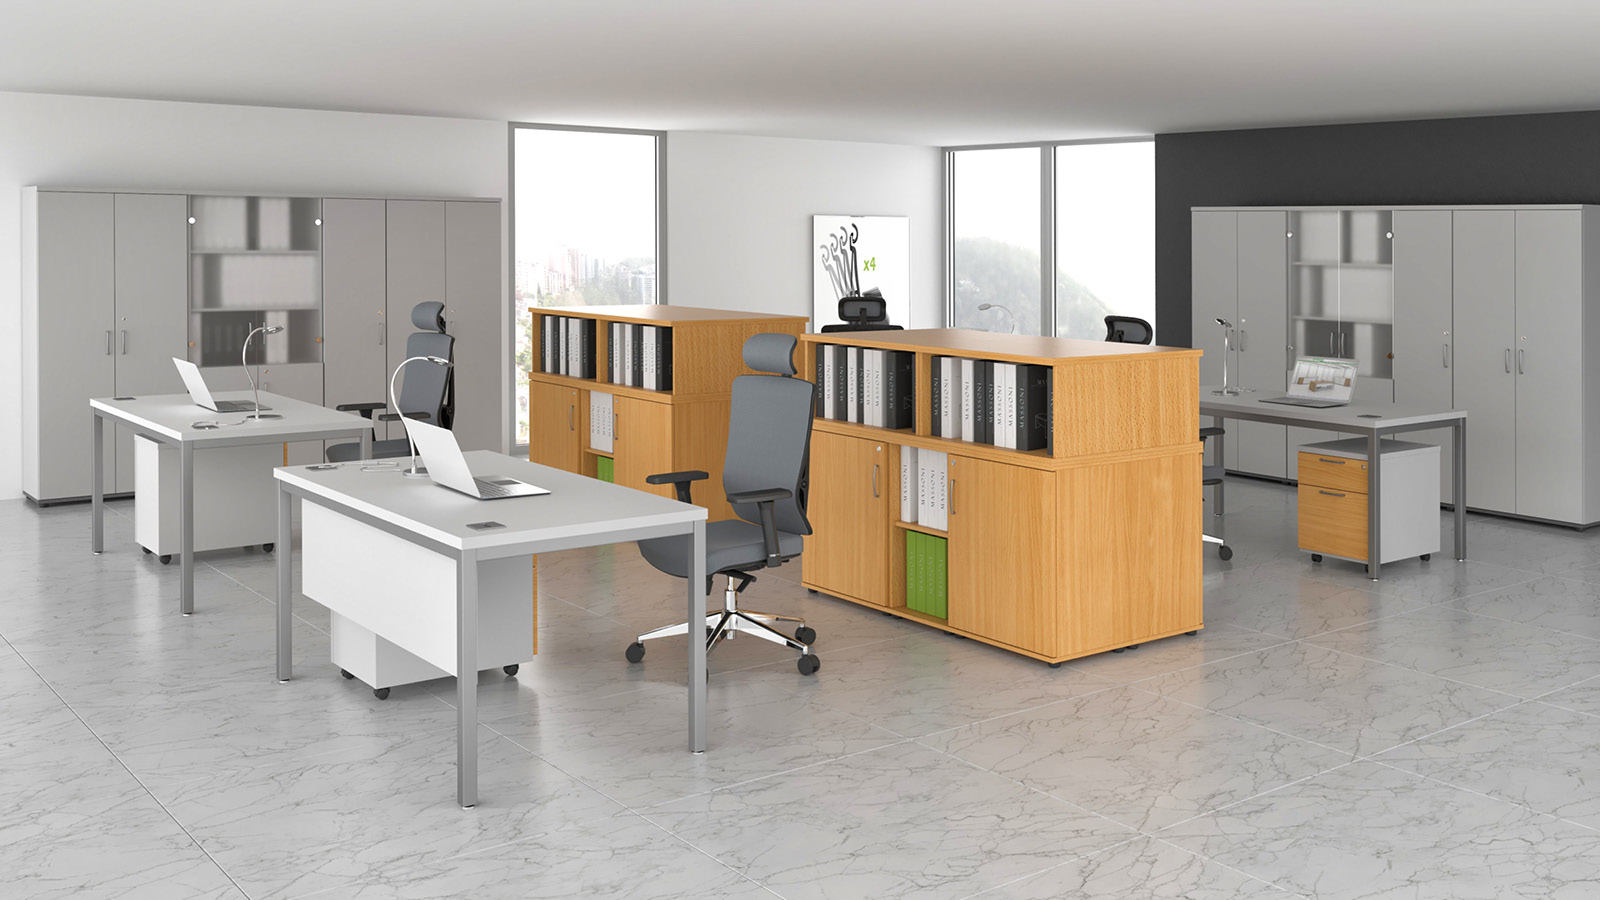 Przestrzeń biurowa wyposażona w wysokie, białe szafy aktowe oraz niskie szafy bukowe. Obok ustawiono biurka na stelażach.